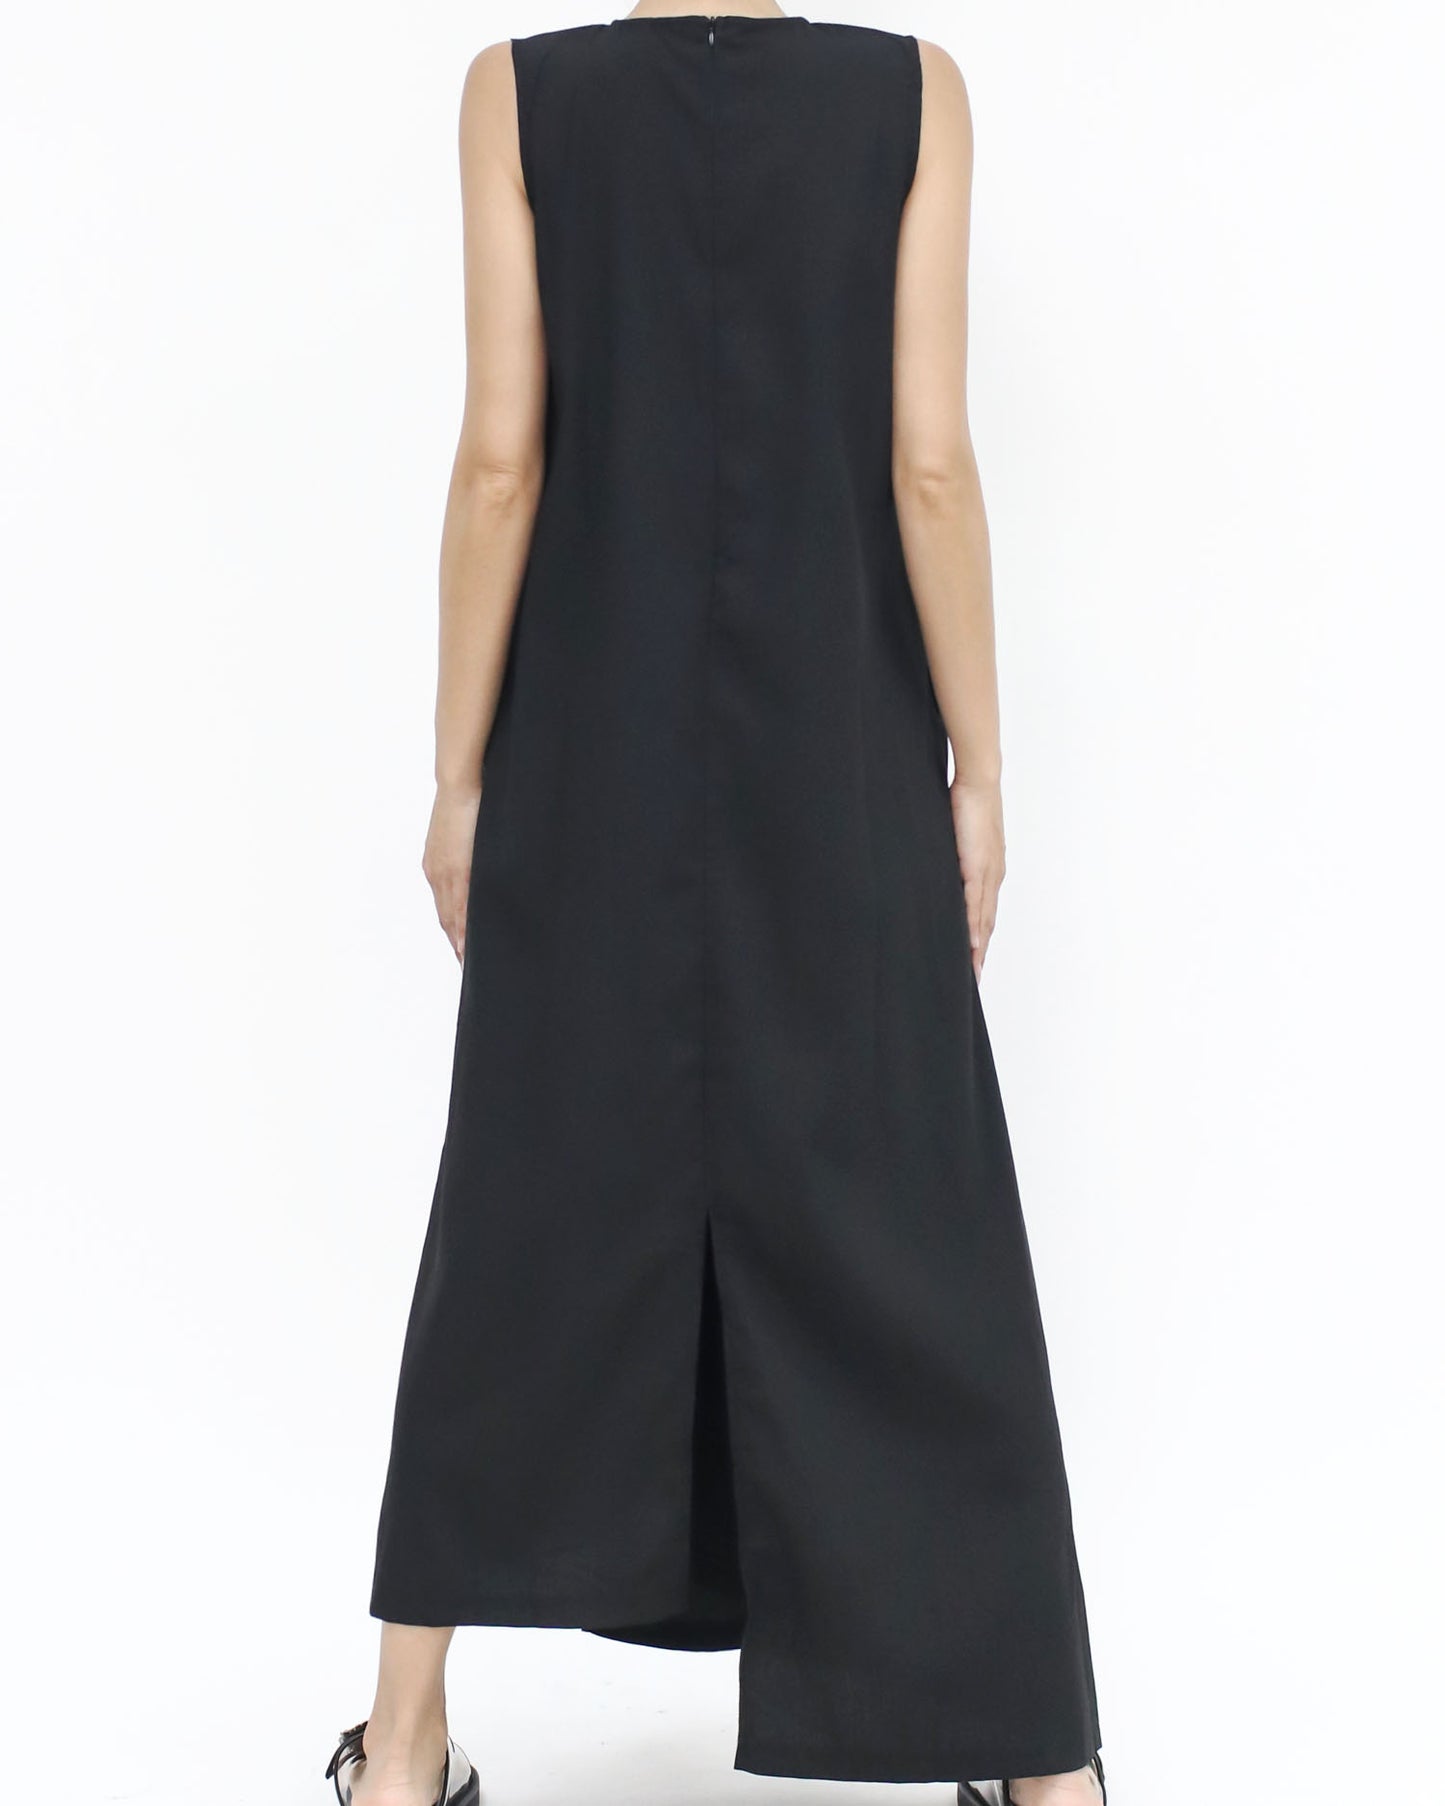 black asymmetric hem cotton dress *pre-order*